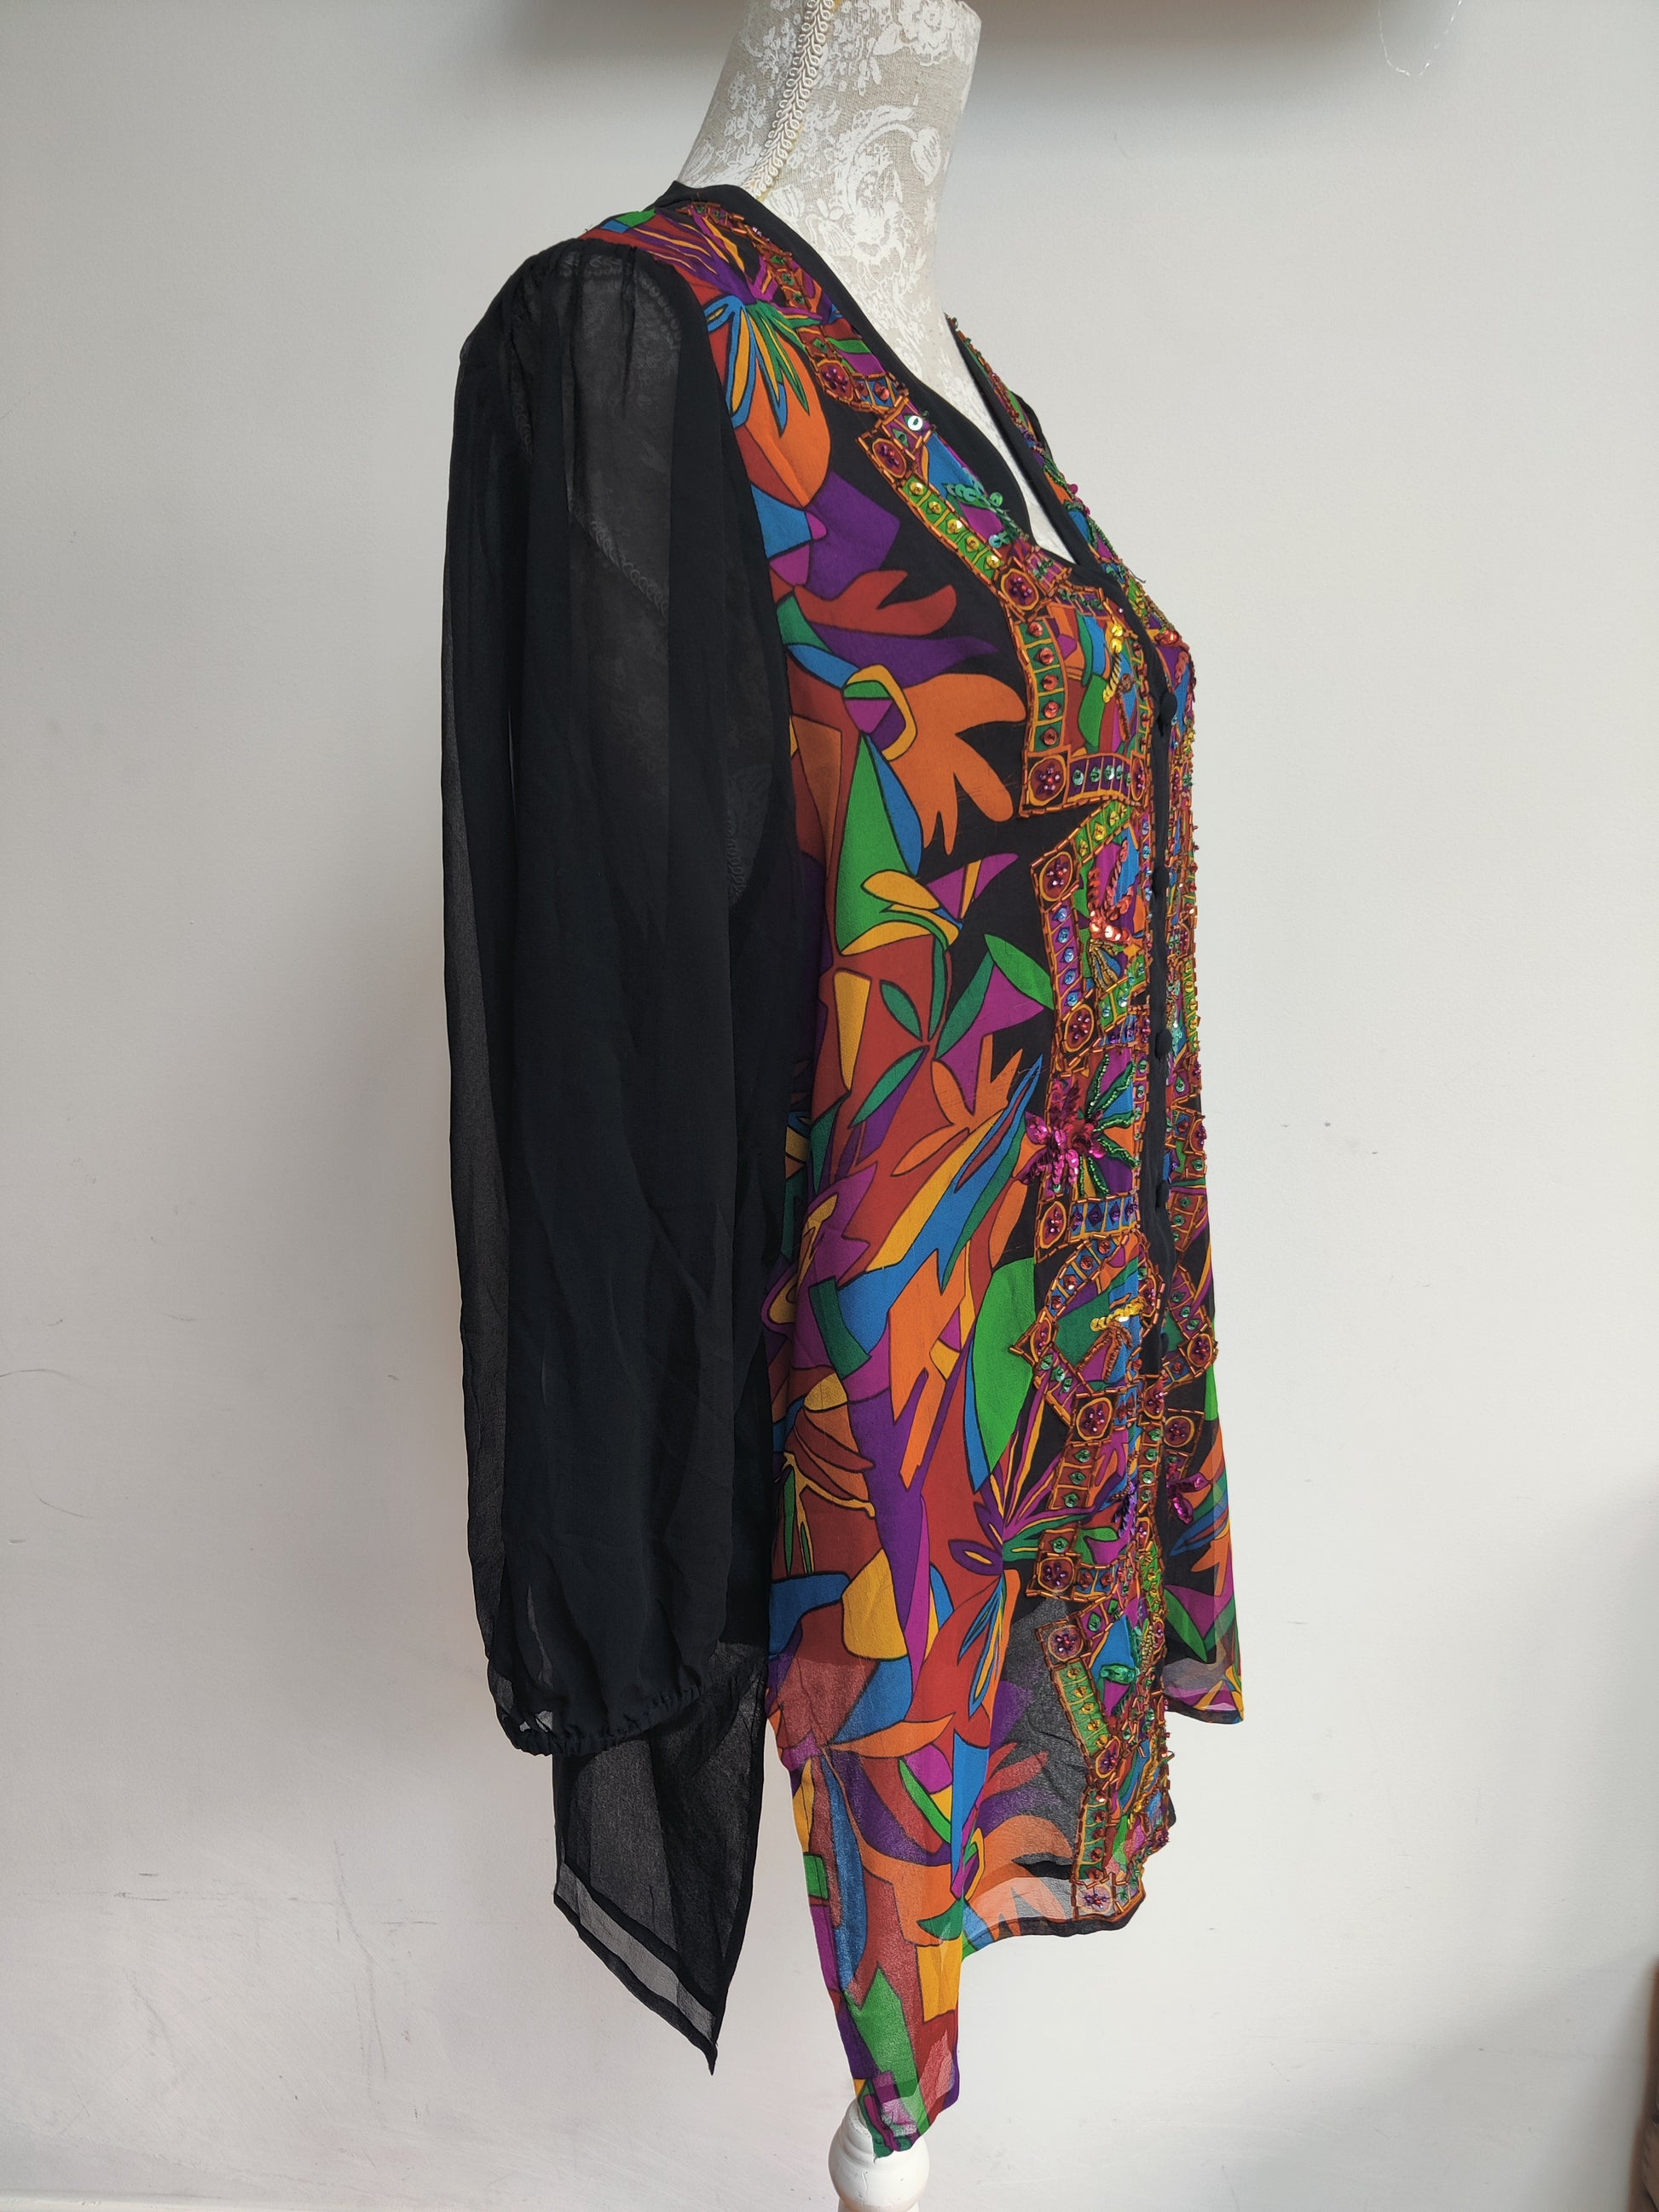 Diane Fries Original top in multicoloured sequin design. 14-16